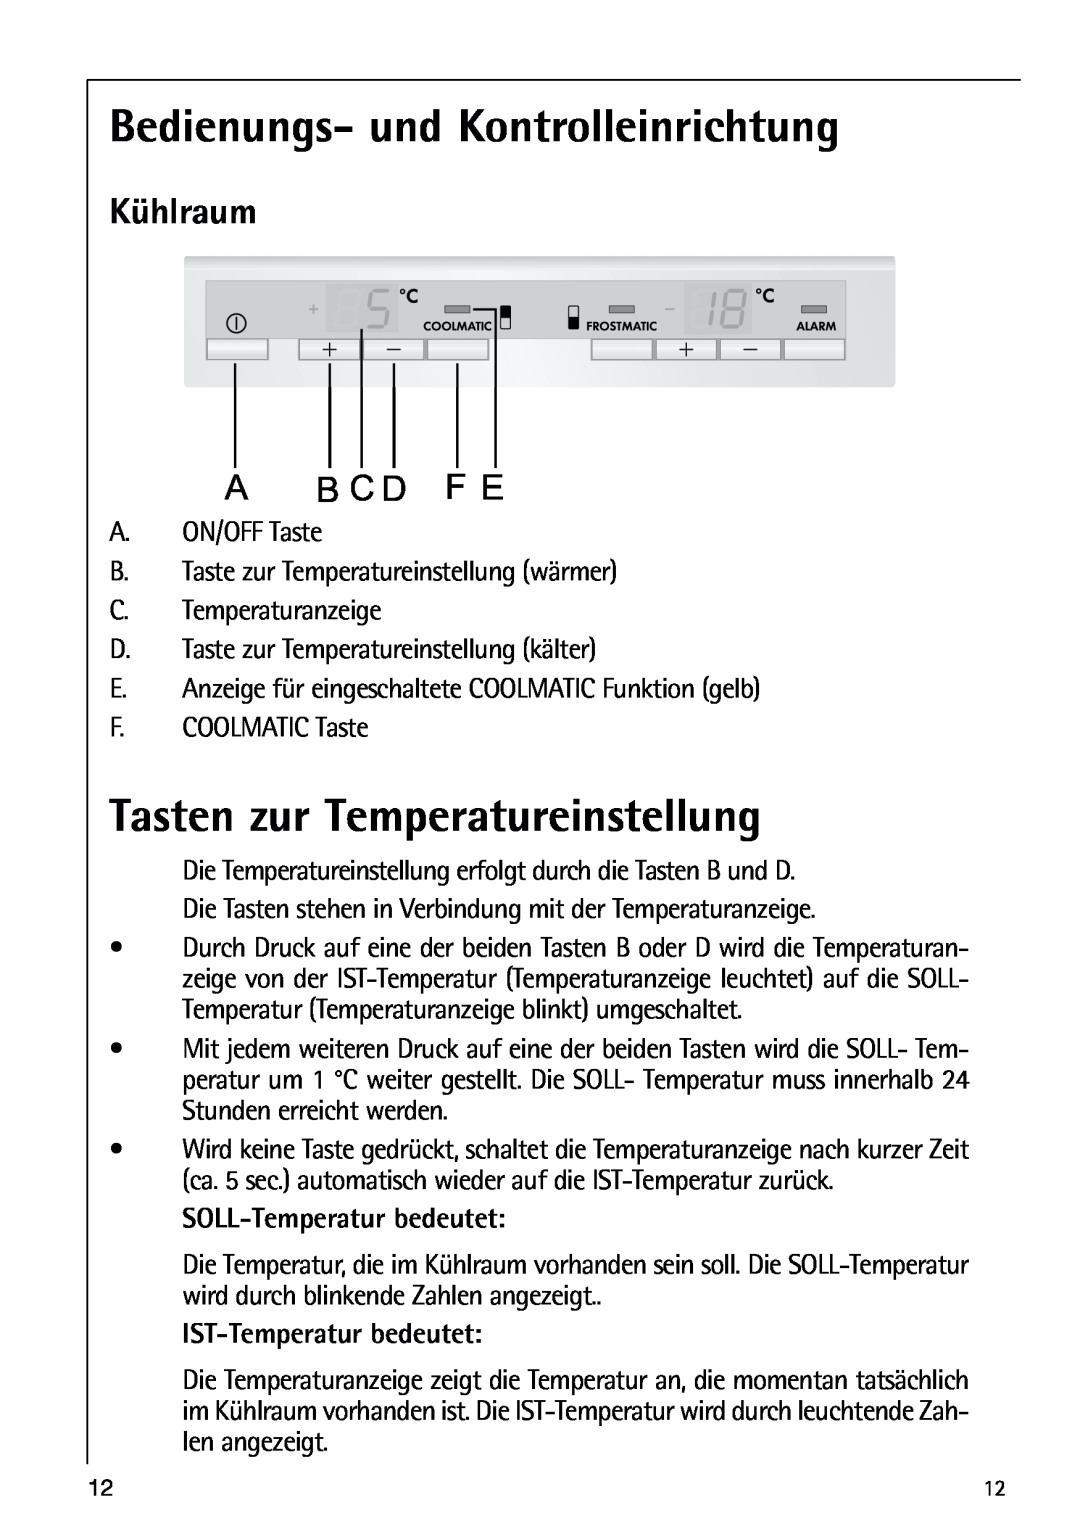 AEG 80318-5 KG user manual Bedienungs- und Kontrolleinrichtung, Tasten zur Temperatureinstellung, Kühlraum, B C D 